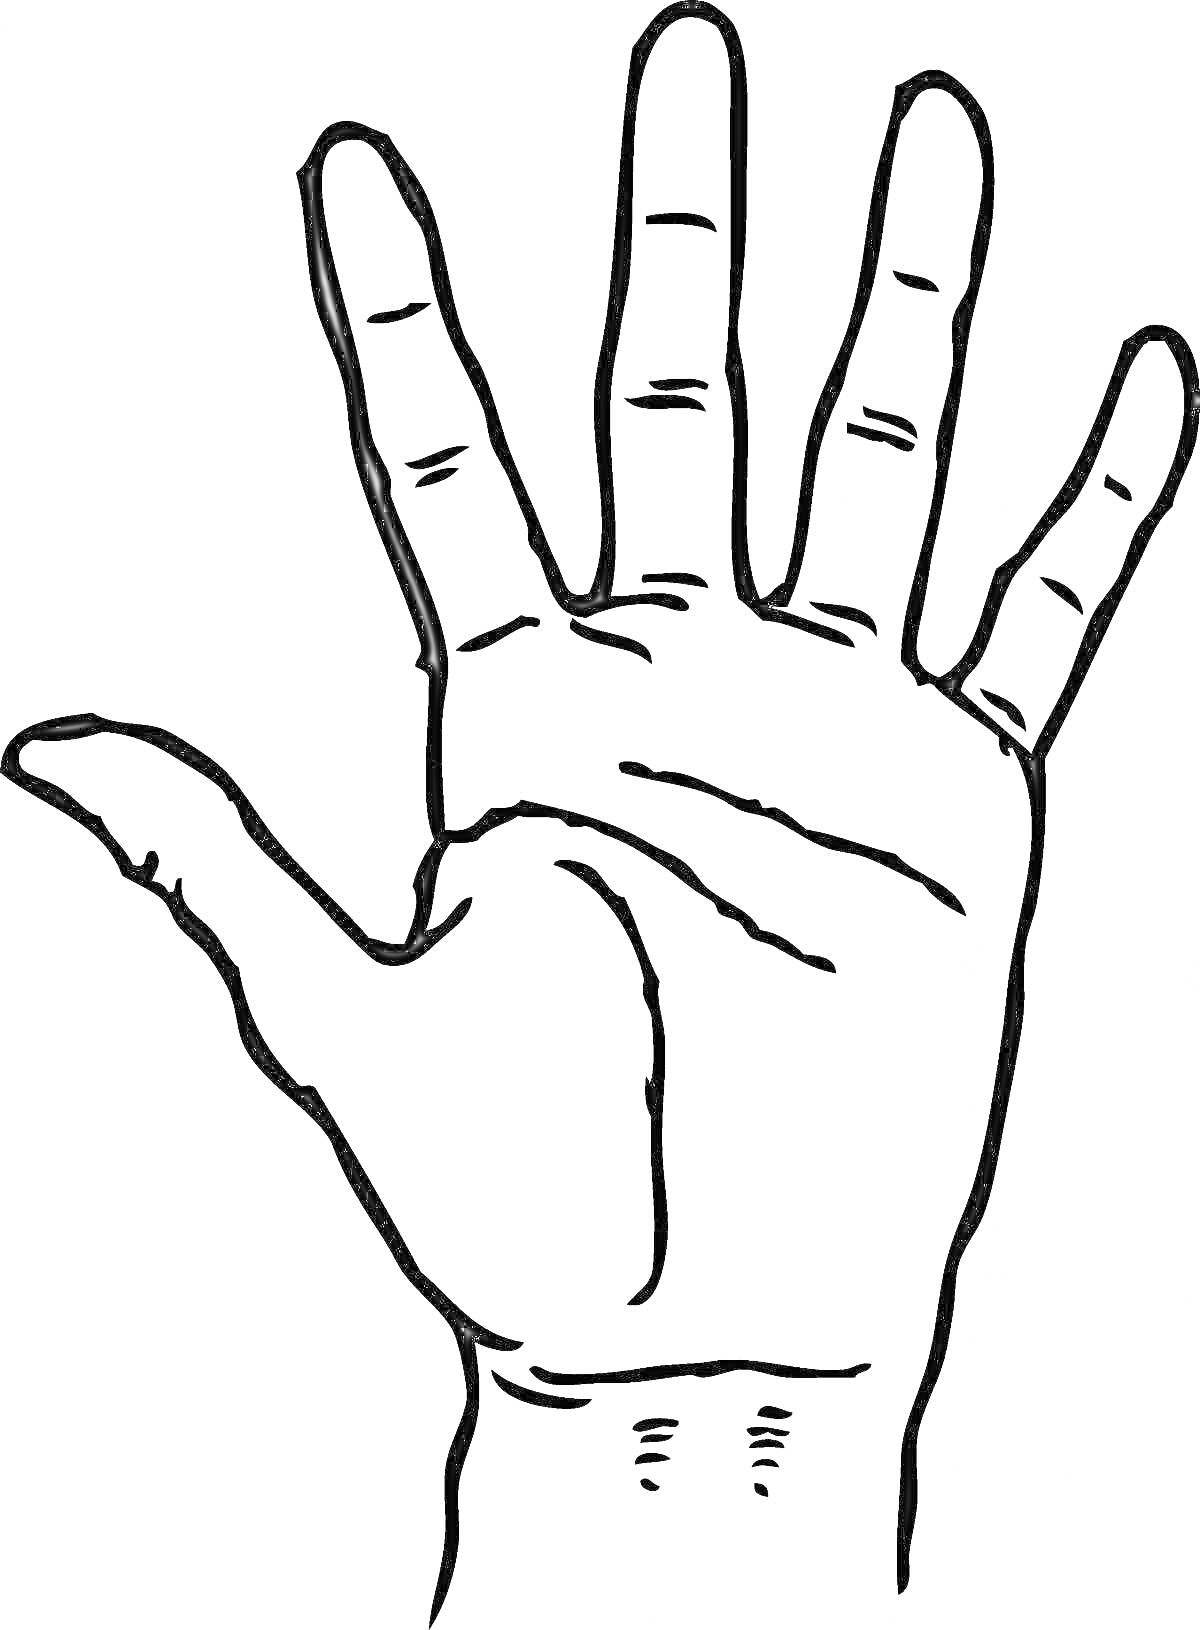 Раскраска с изображением ладони руки с пятью пальцами и линиями кожи